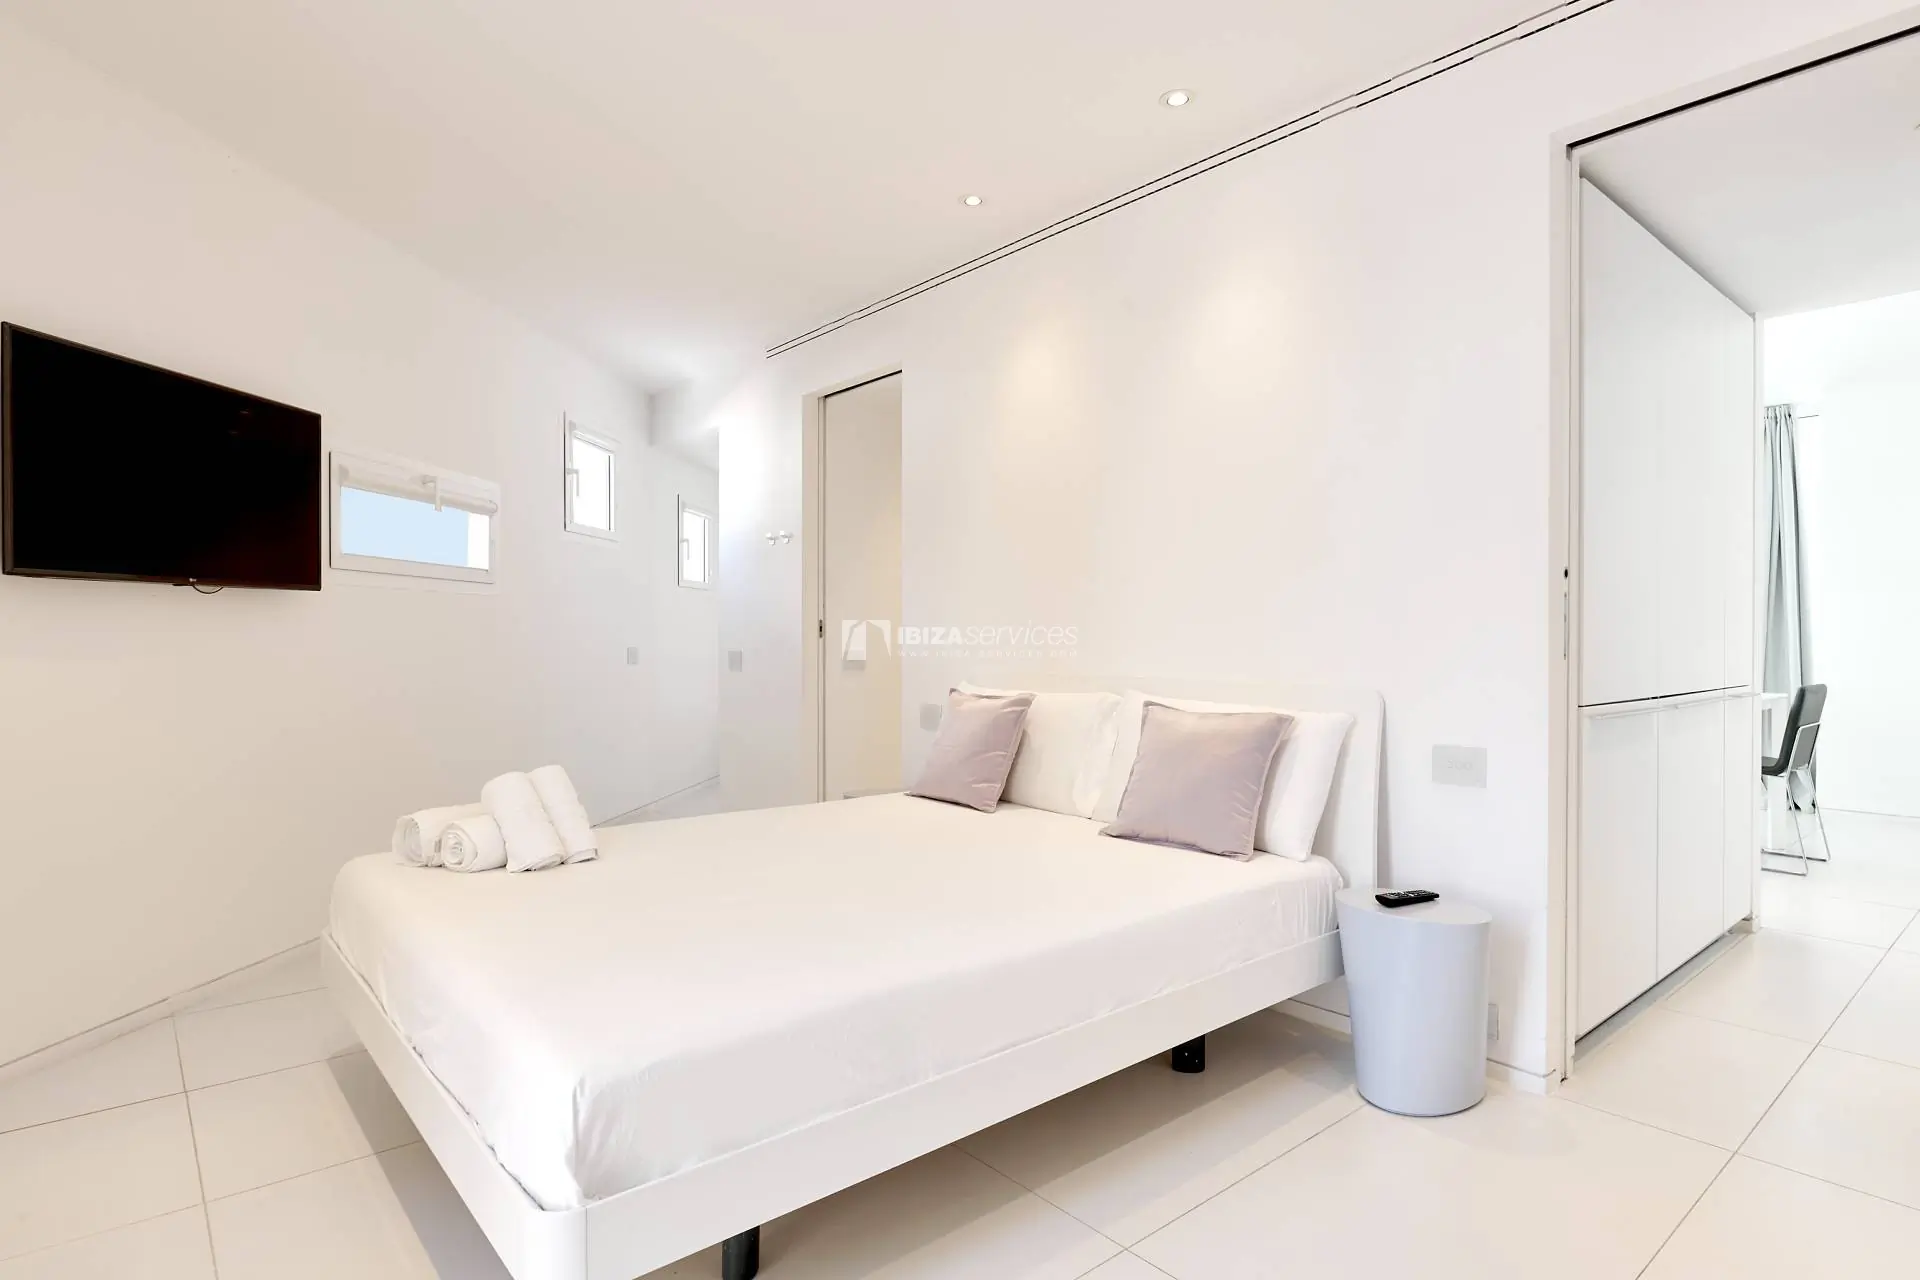 1071 2 bedroom apartment in Patio Blanco, Botafoch for sale